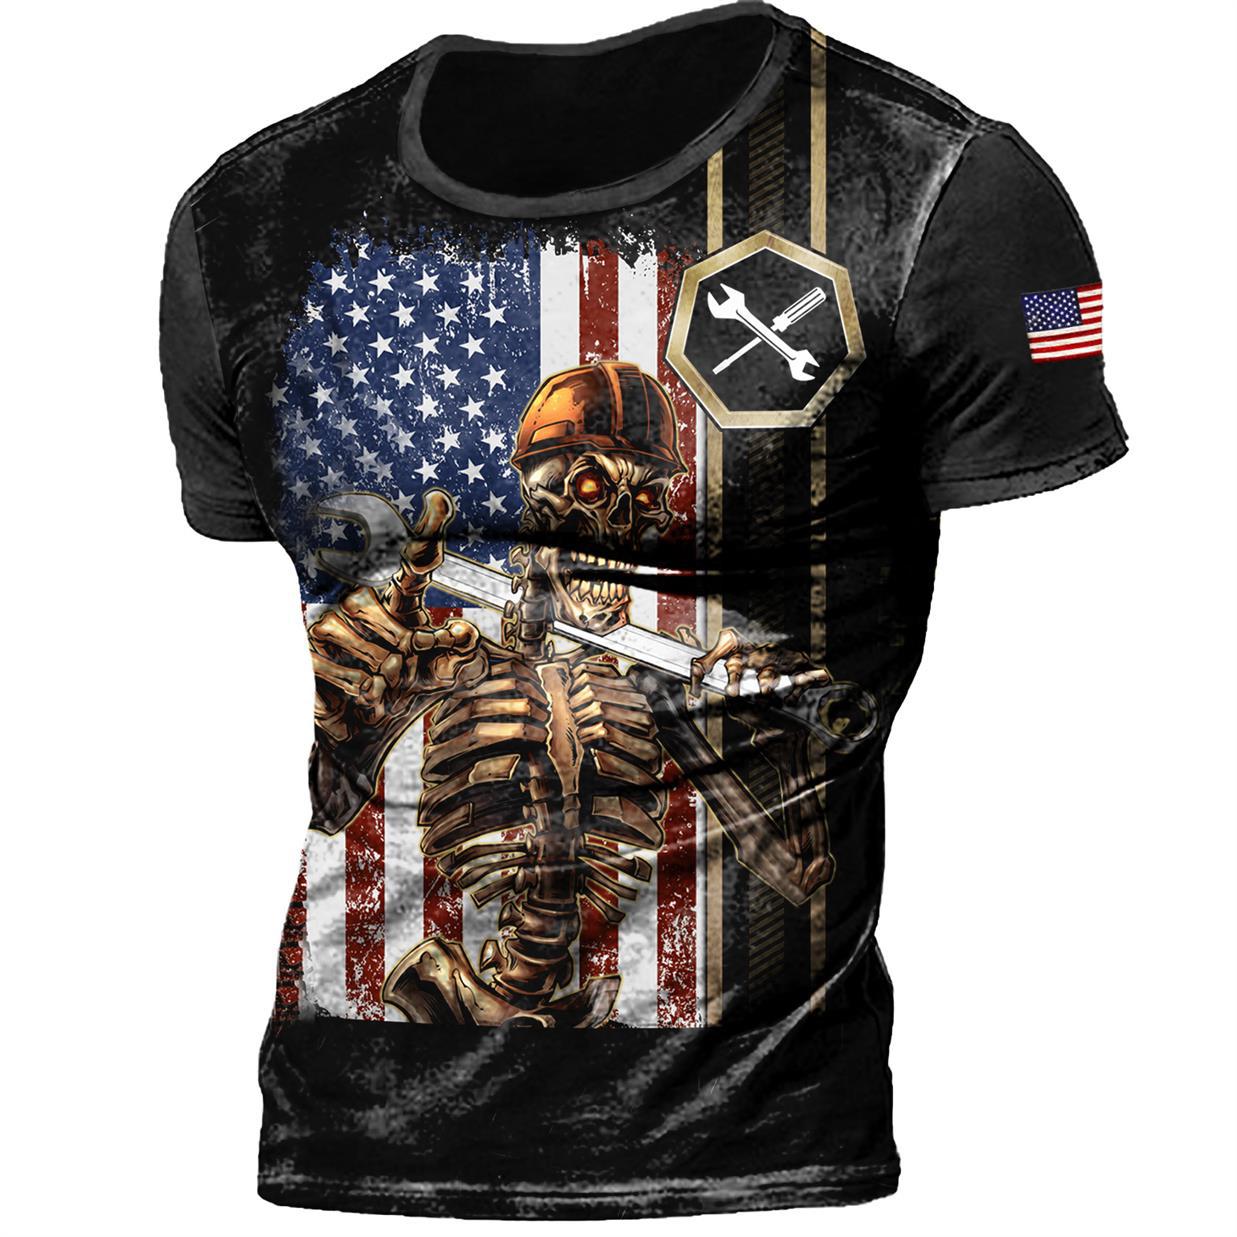 Men's American Flag Mechanic Chic Skull T-shirt